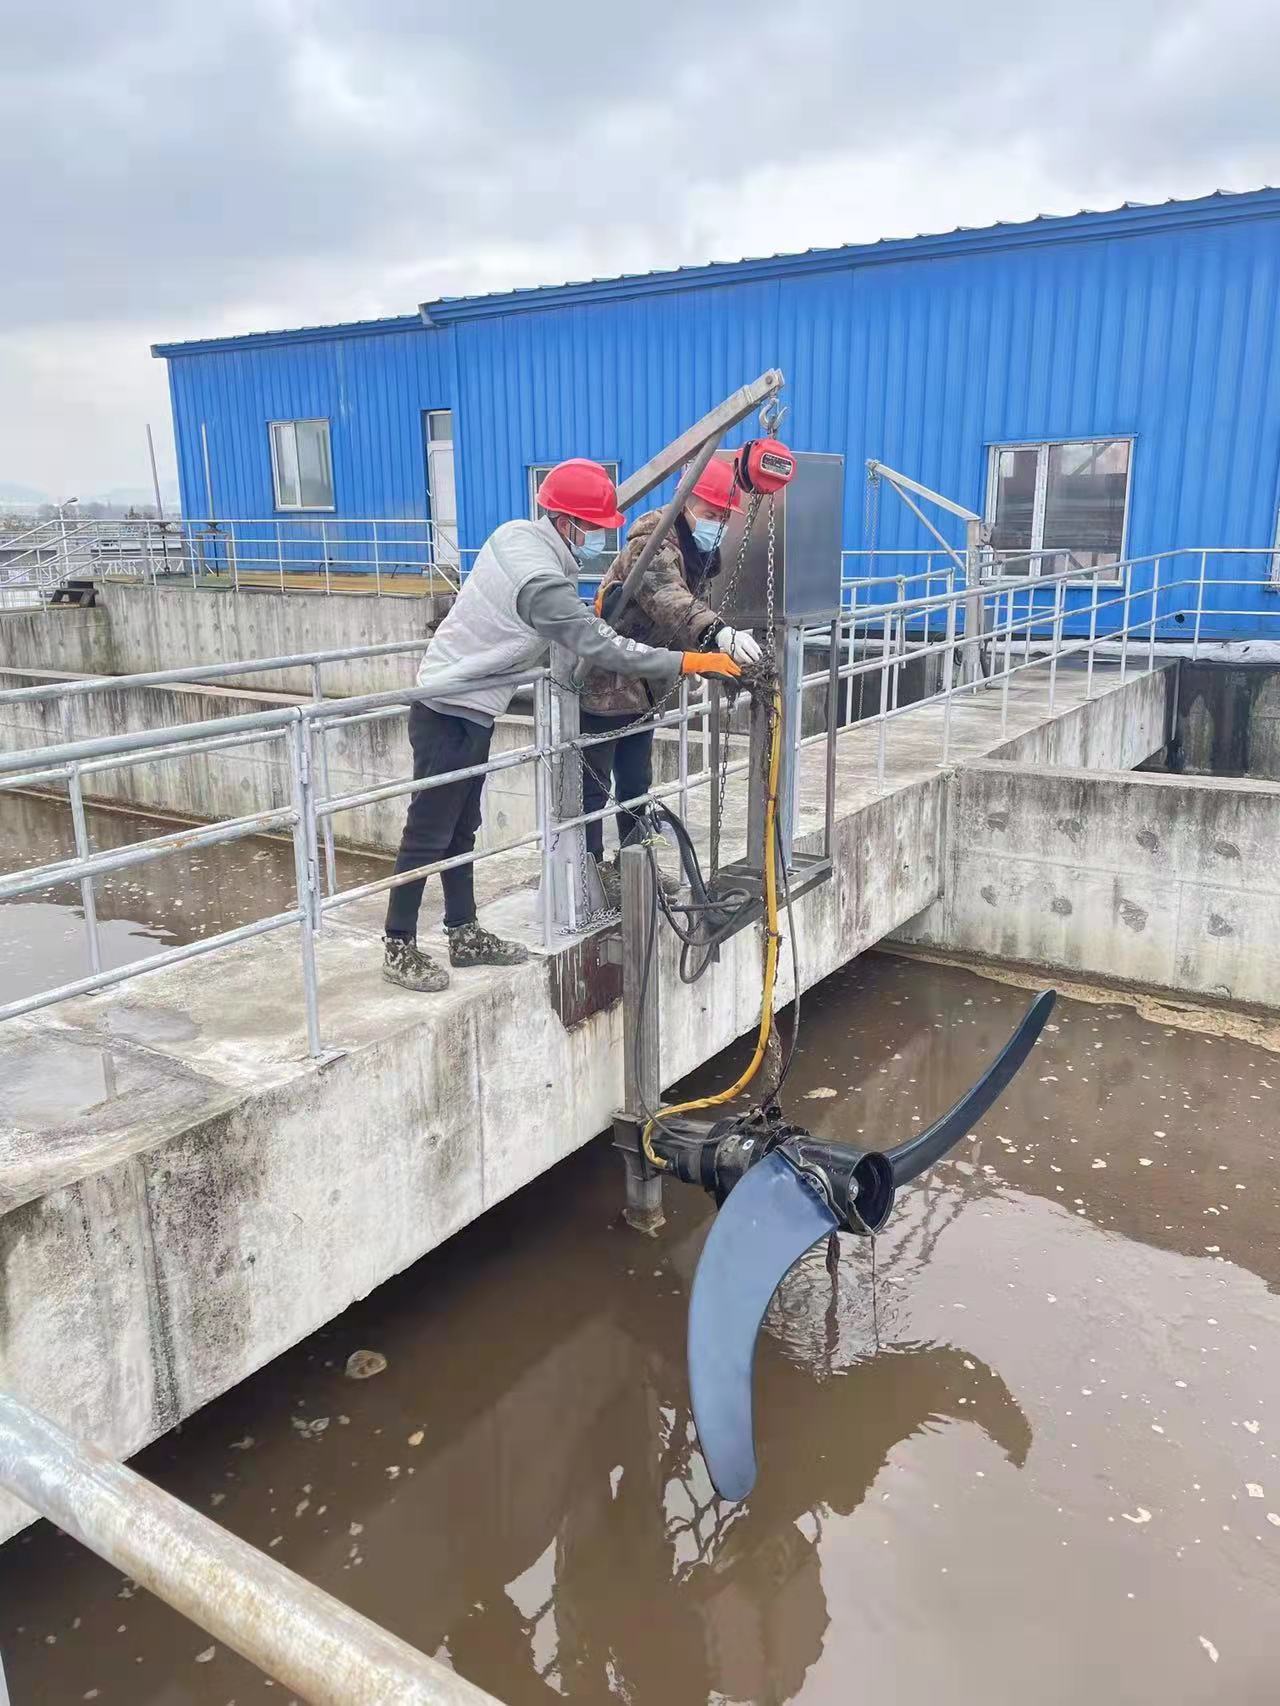 集团驻吉林地区污水处理厂勇于承担社会责任 全面筑牢疫情防线